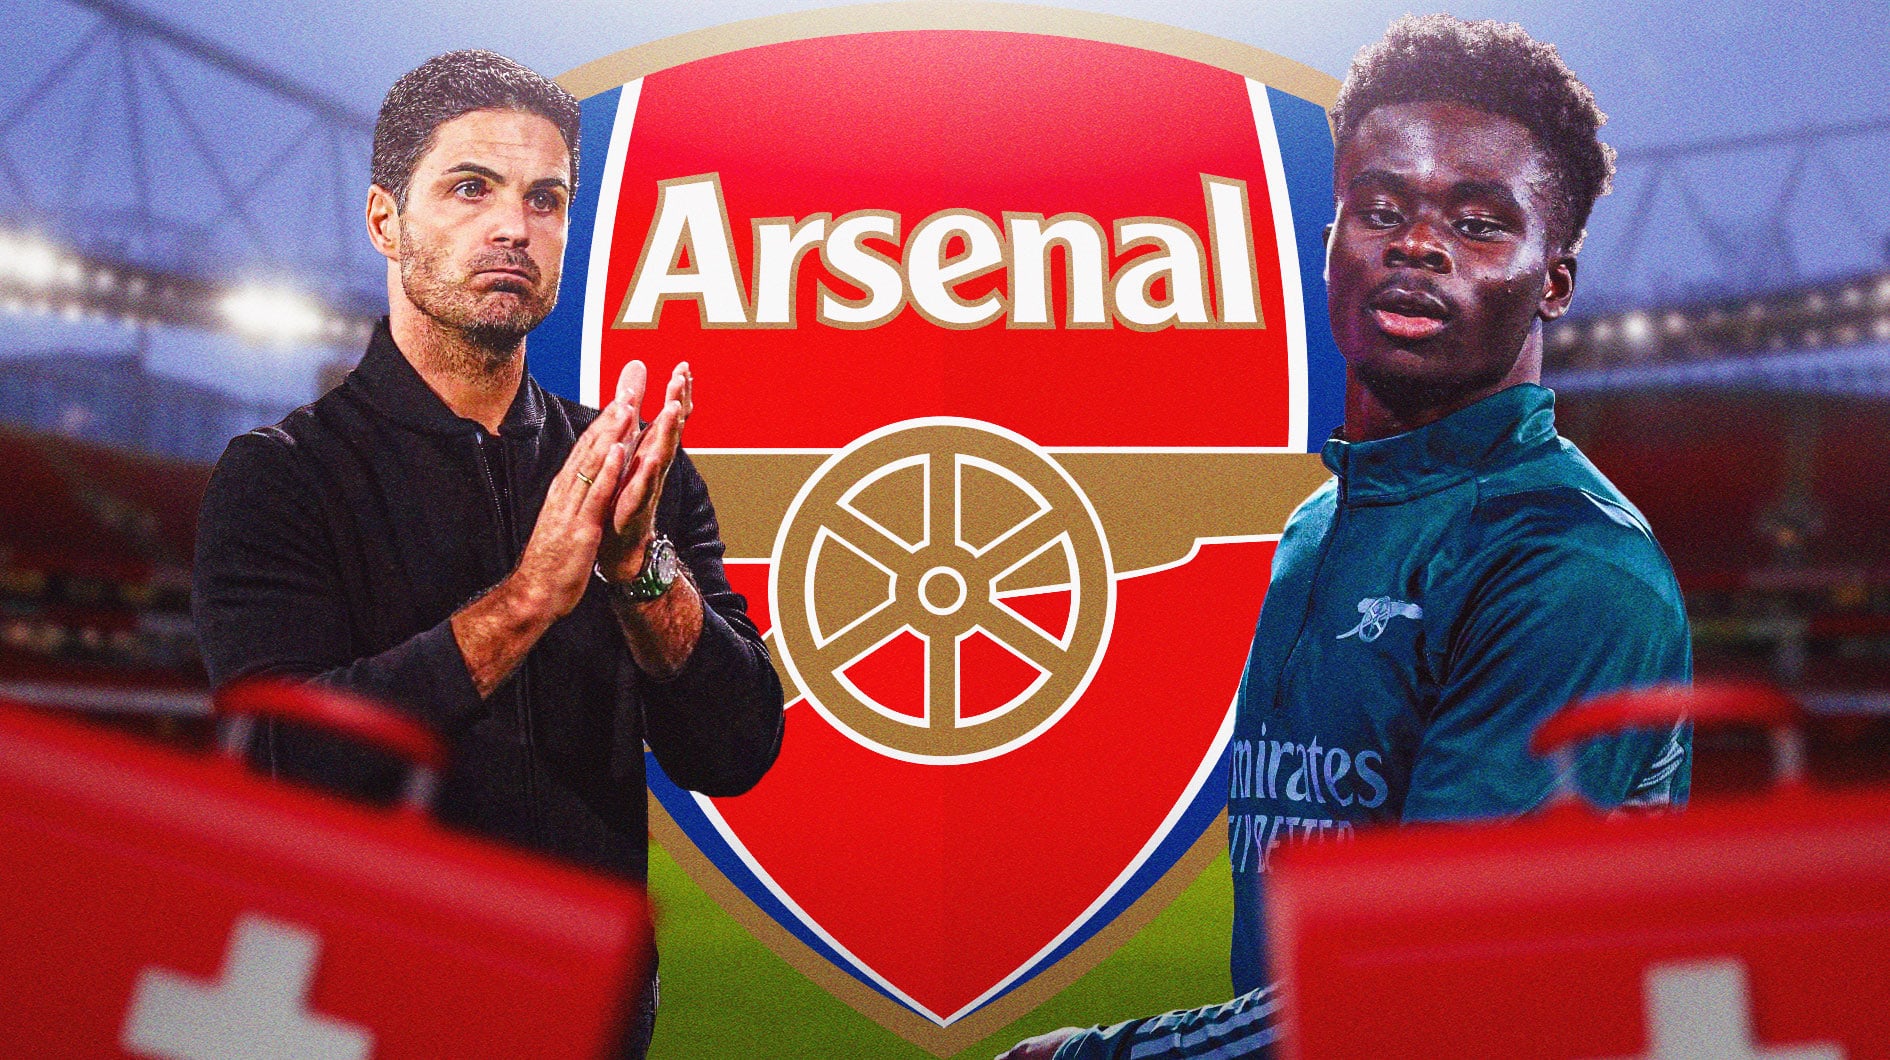 Bukayo Saka and Mikel Arteta in front of the Arsenal logo